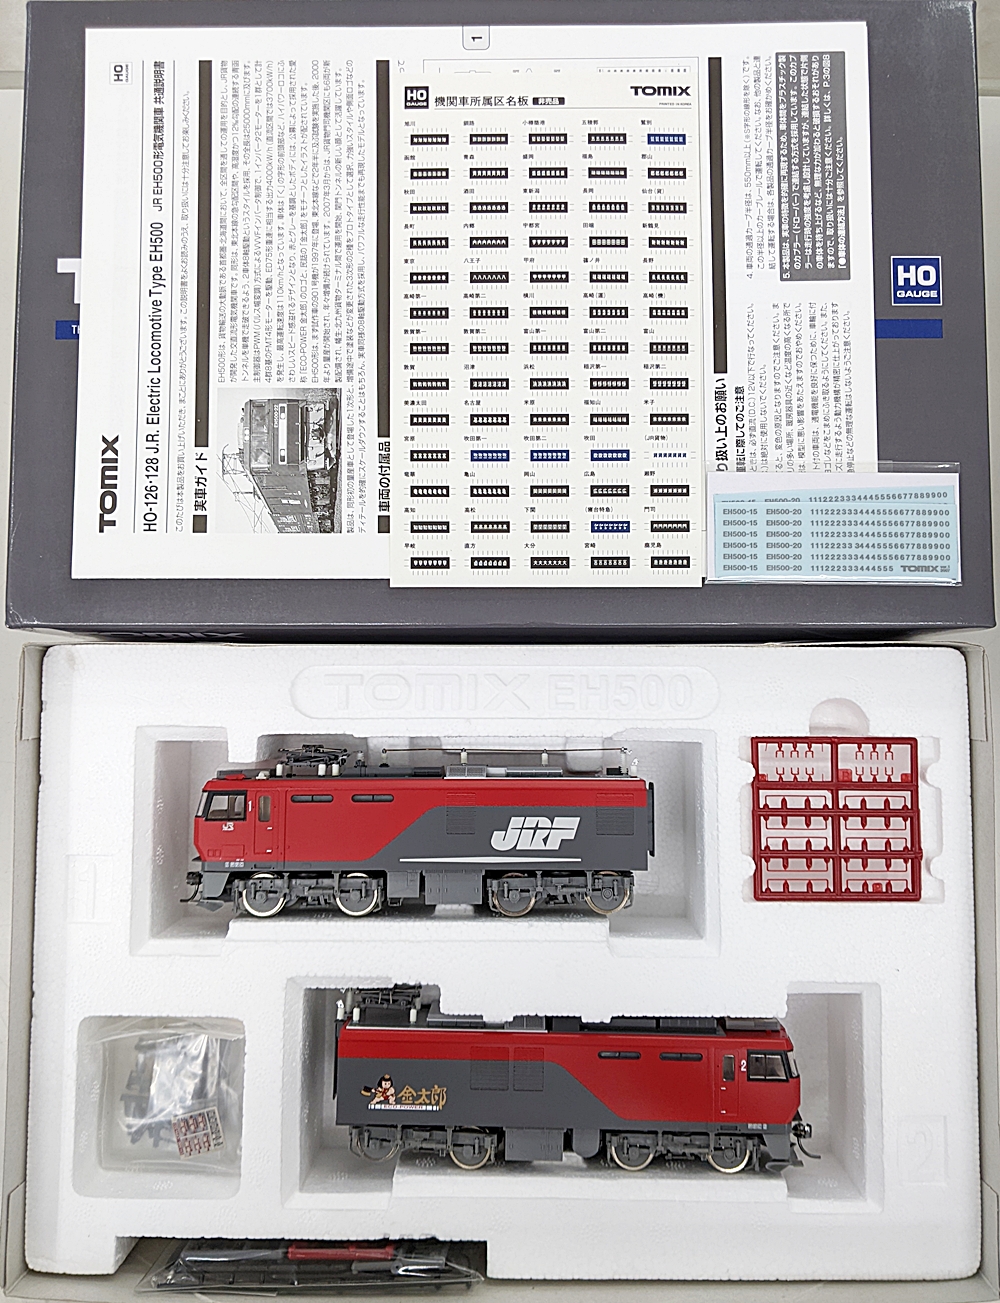 お得国産TOMIX トミックス 2147 JR EH500形電気機関車(2次形・GPS付) 電気機関車